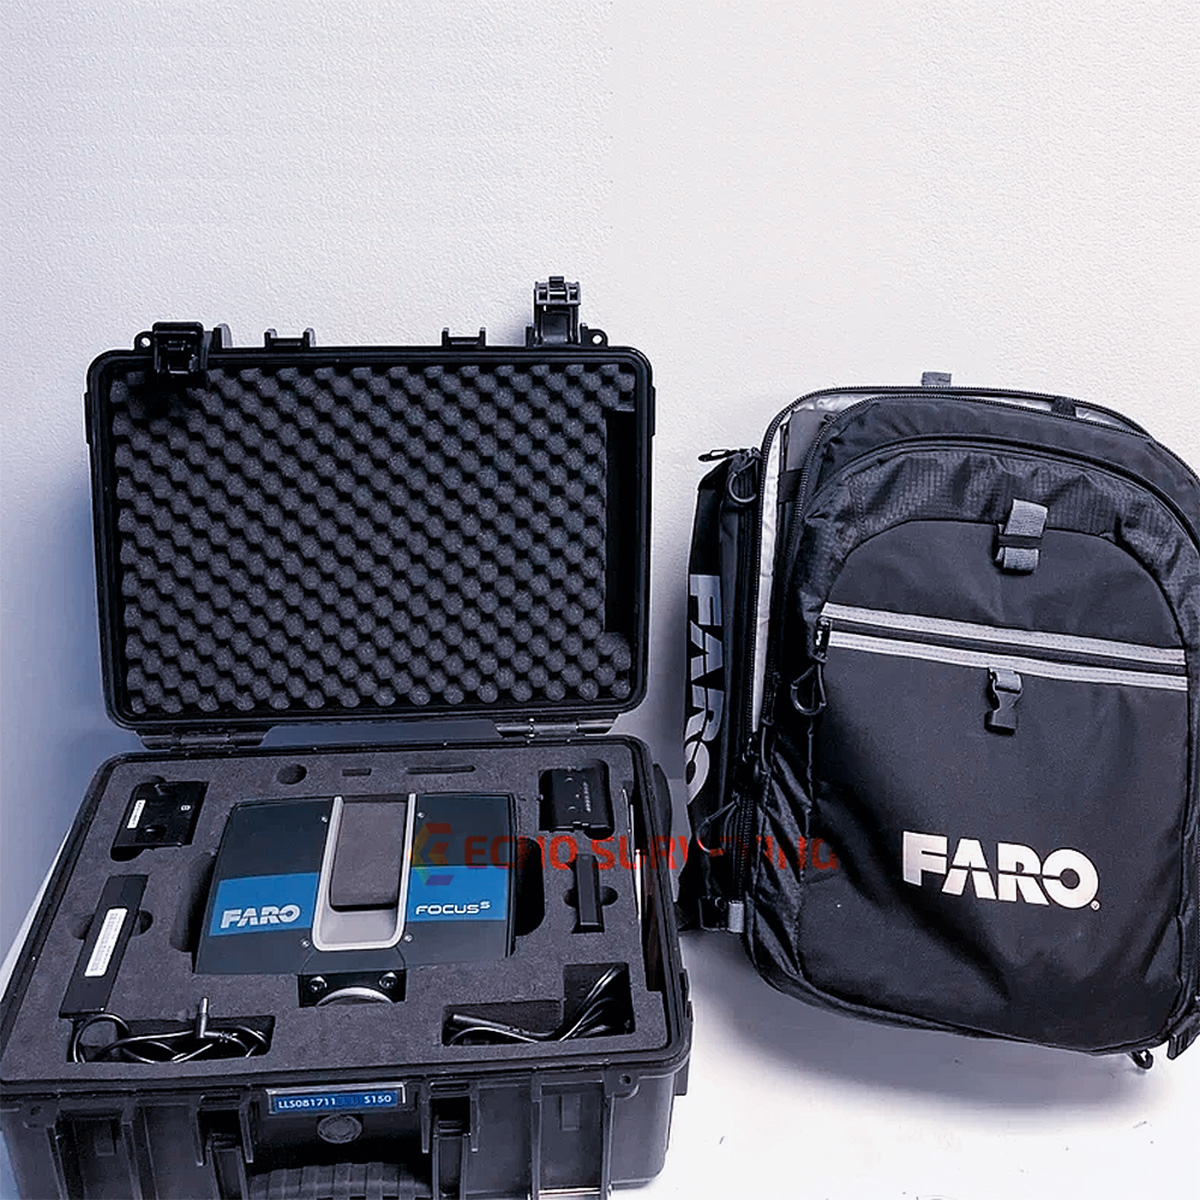 Used-Faro-Focus-S150-Laser-Scanner.jpg